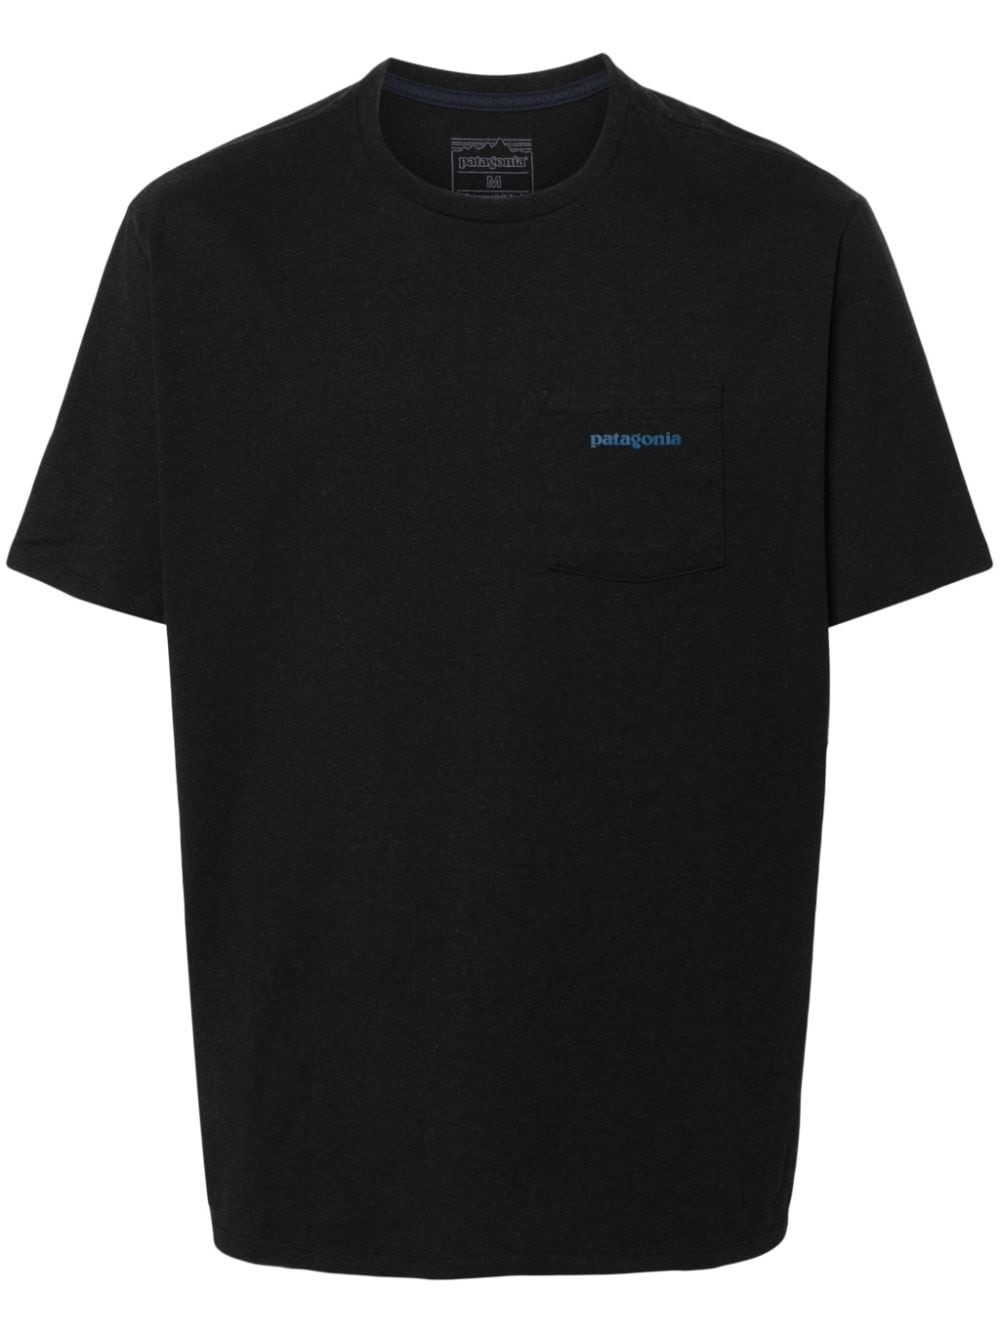 Patagonia T-shirt Pattern Uomo - 1